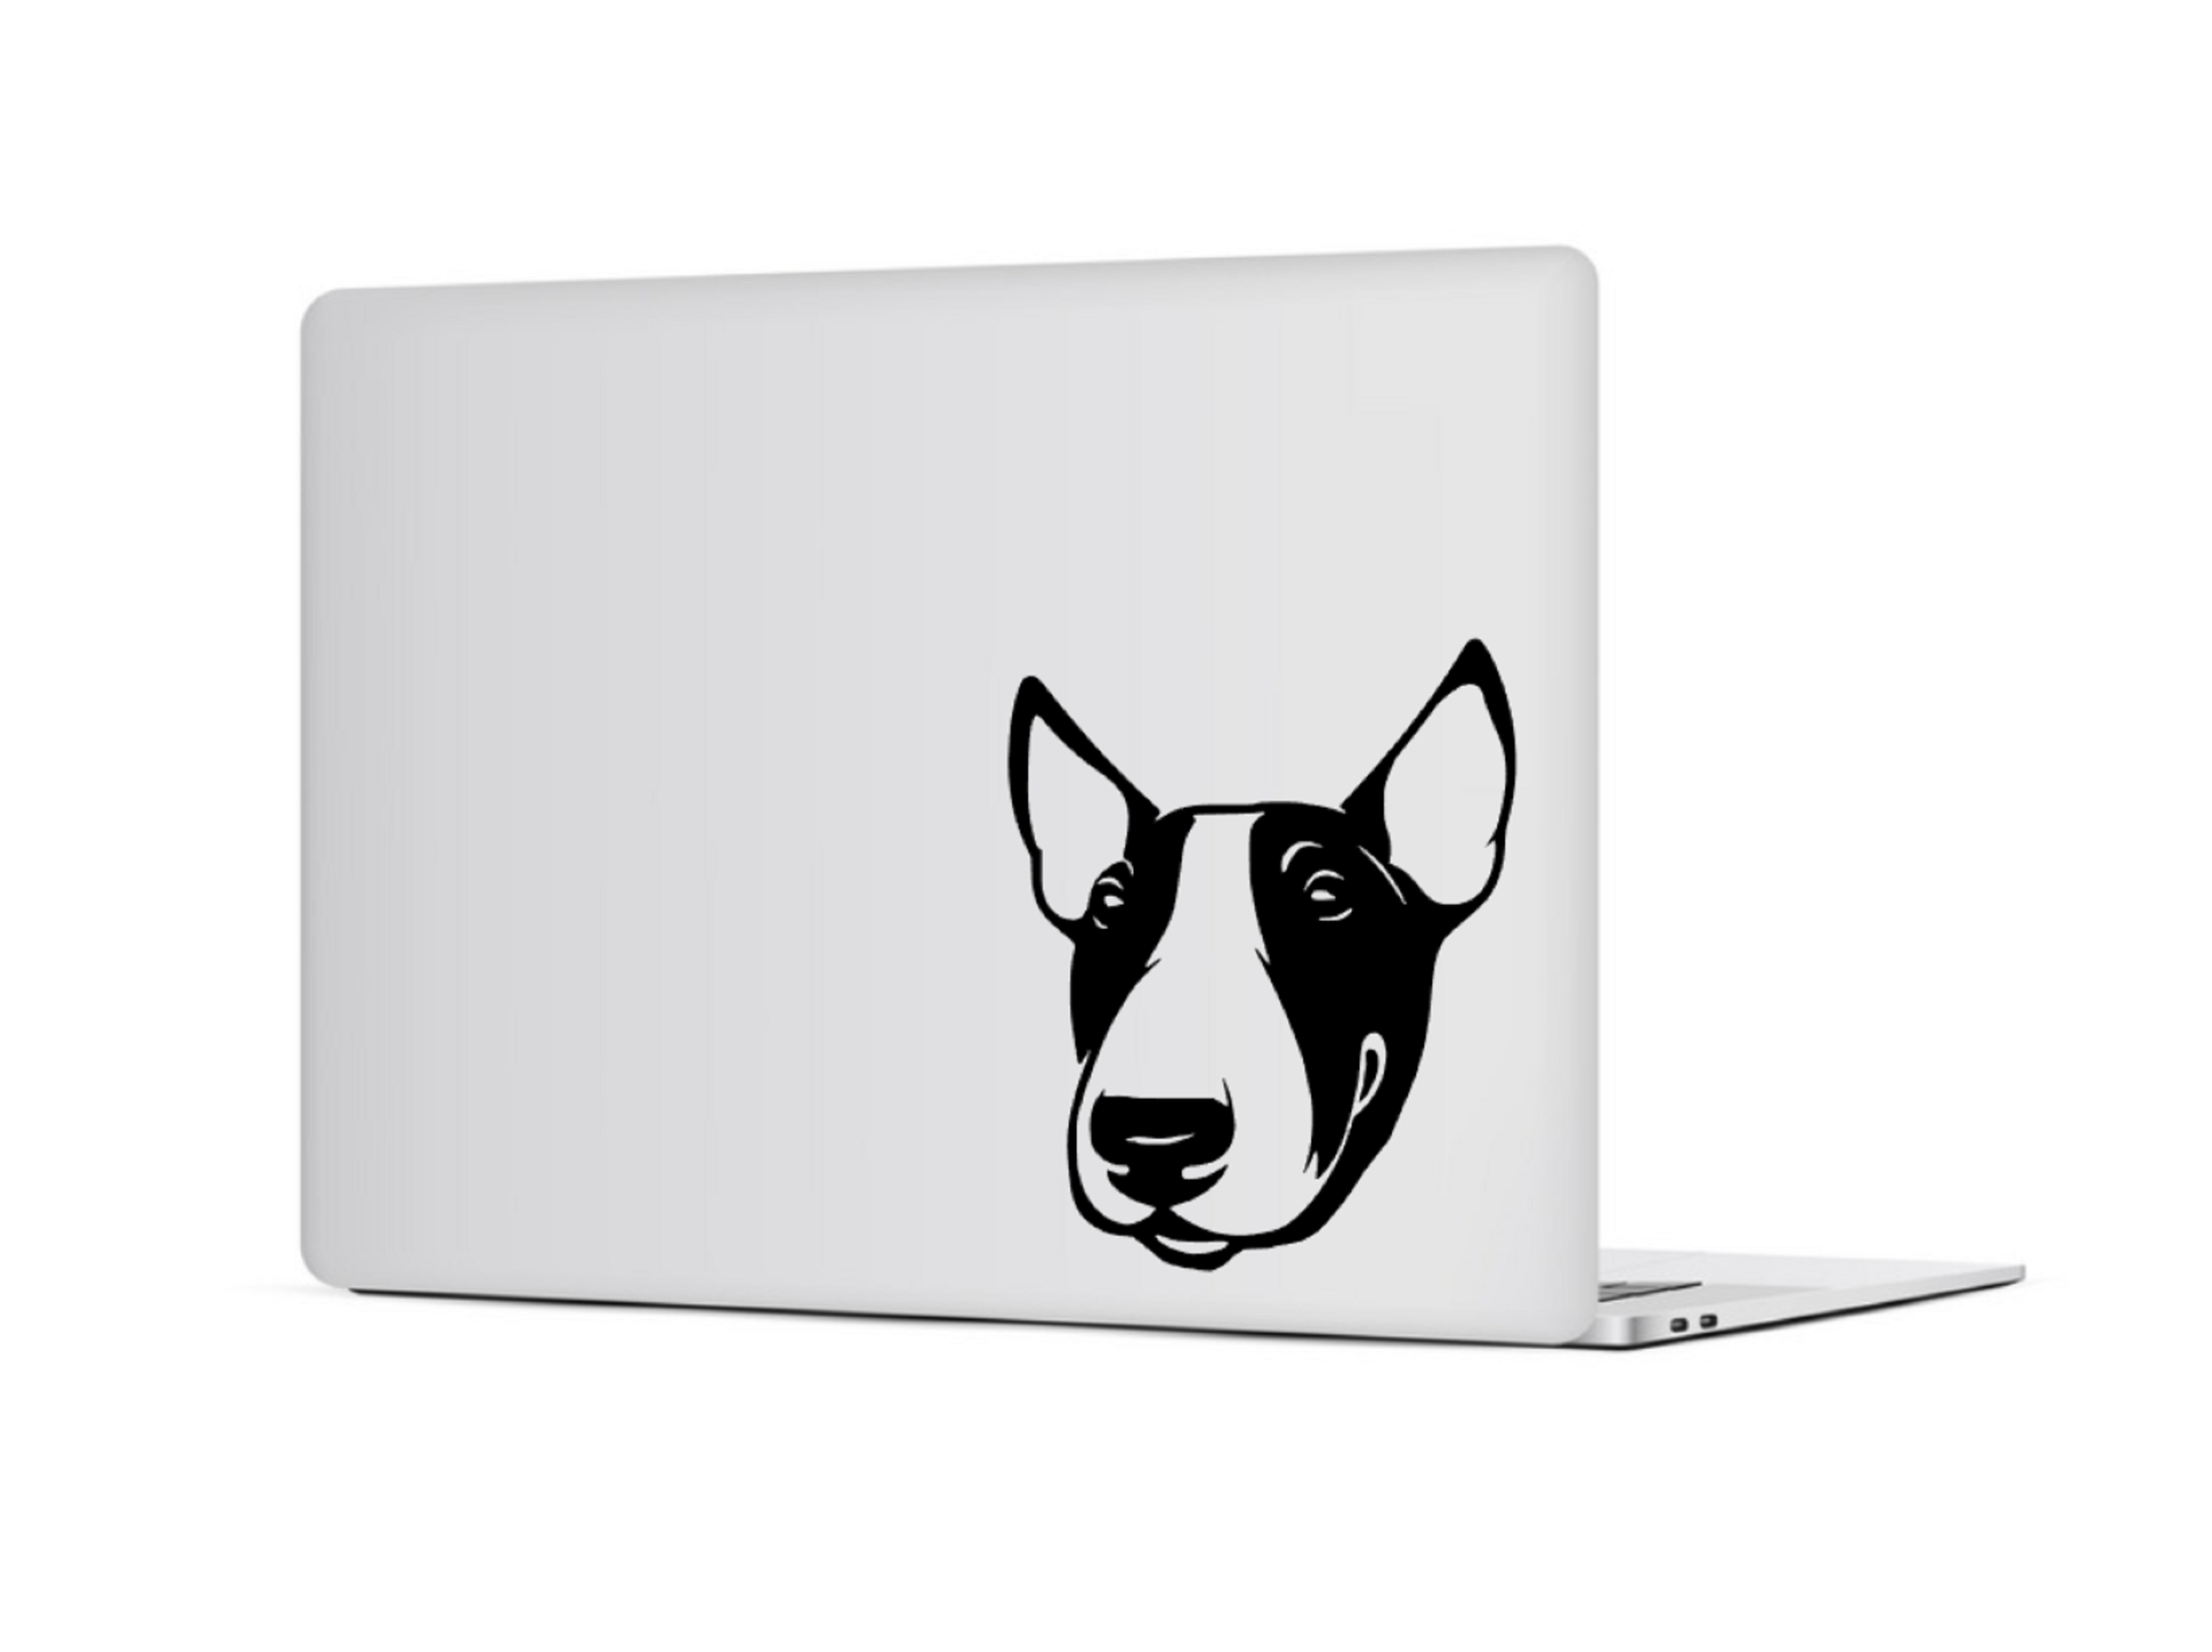 Bull Terrier Sticker. Bully Decal - My Crafty Dog